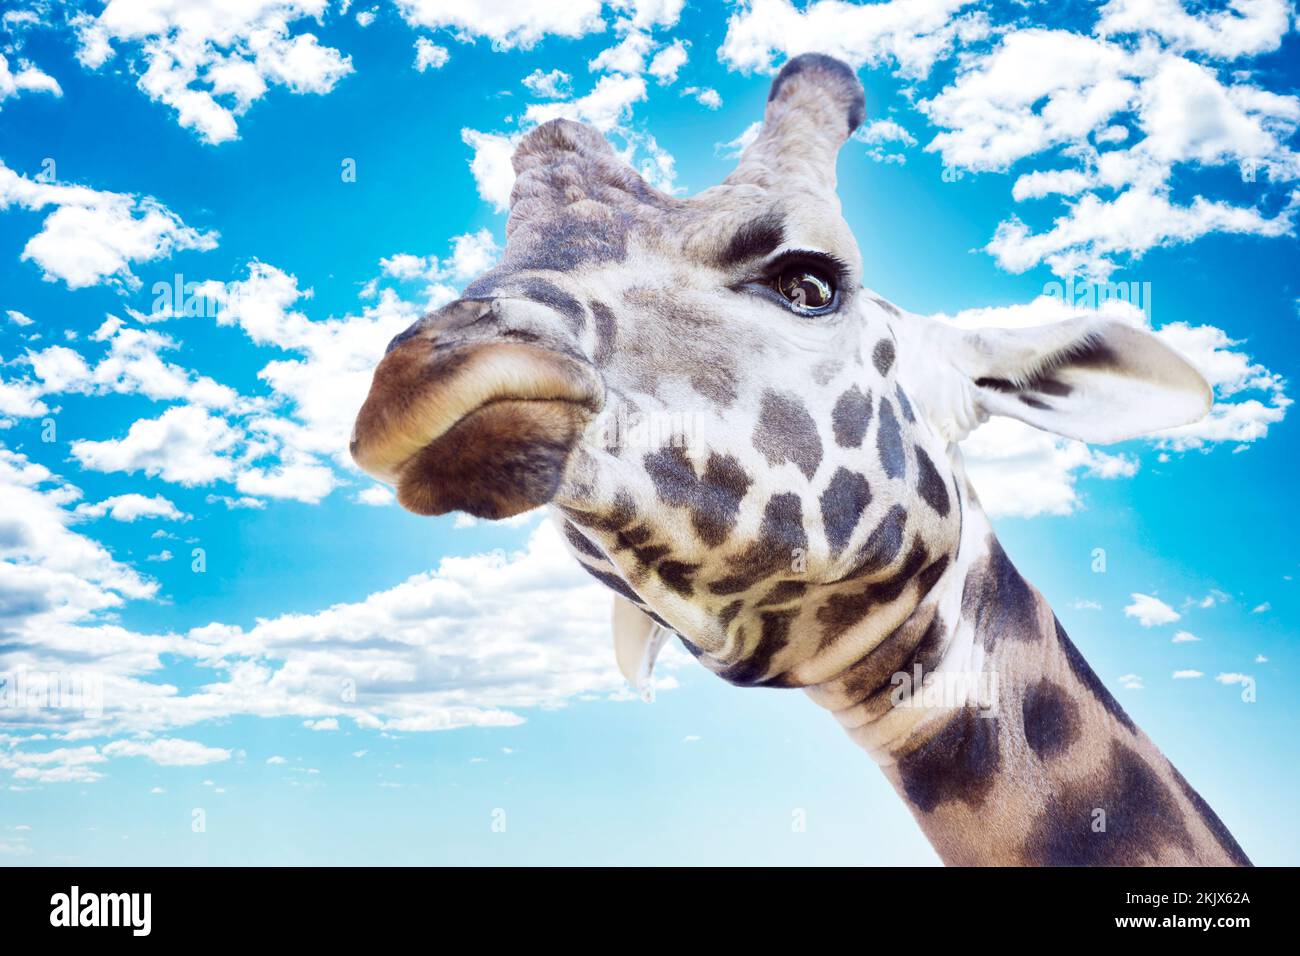 Un grande ritratto di testa giraffa con un'espressione facciale arrabbiata che guarda dall'alto verso il cielo blu estivo con soffici nuvole bianche Foto Stock